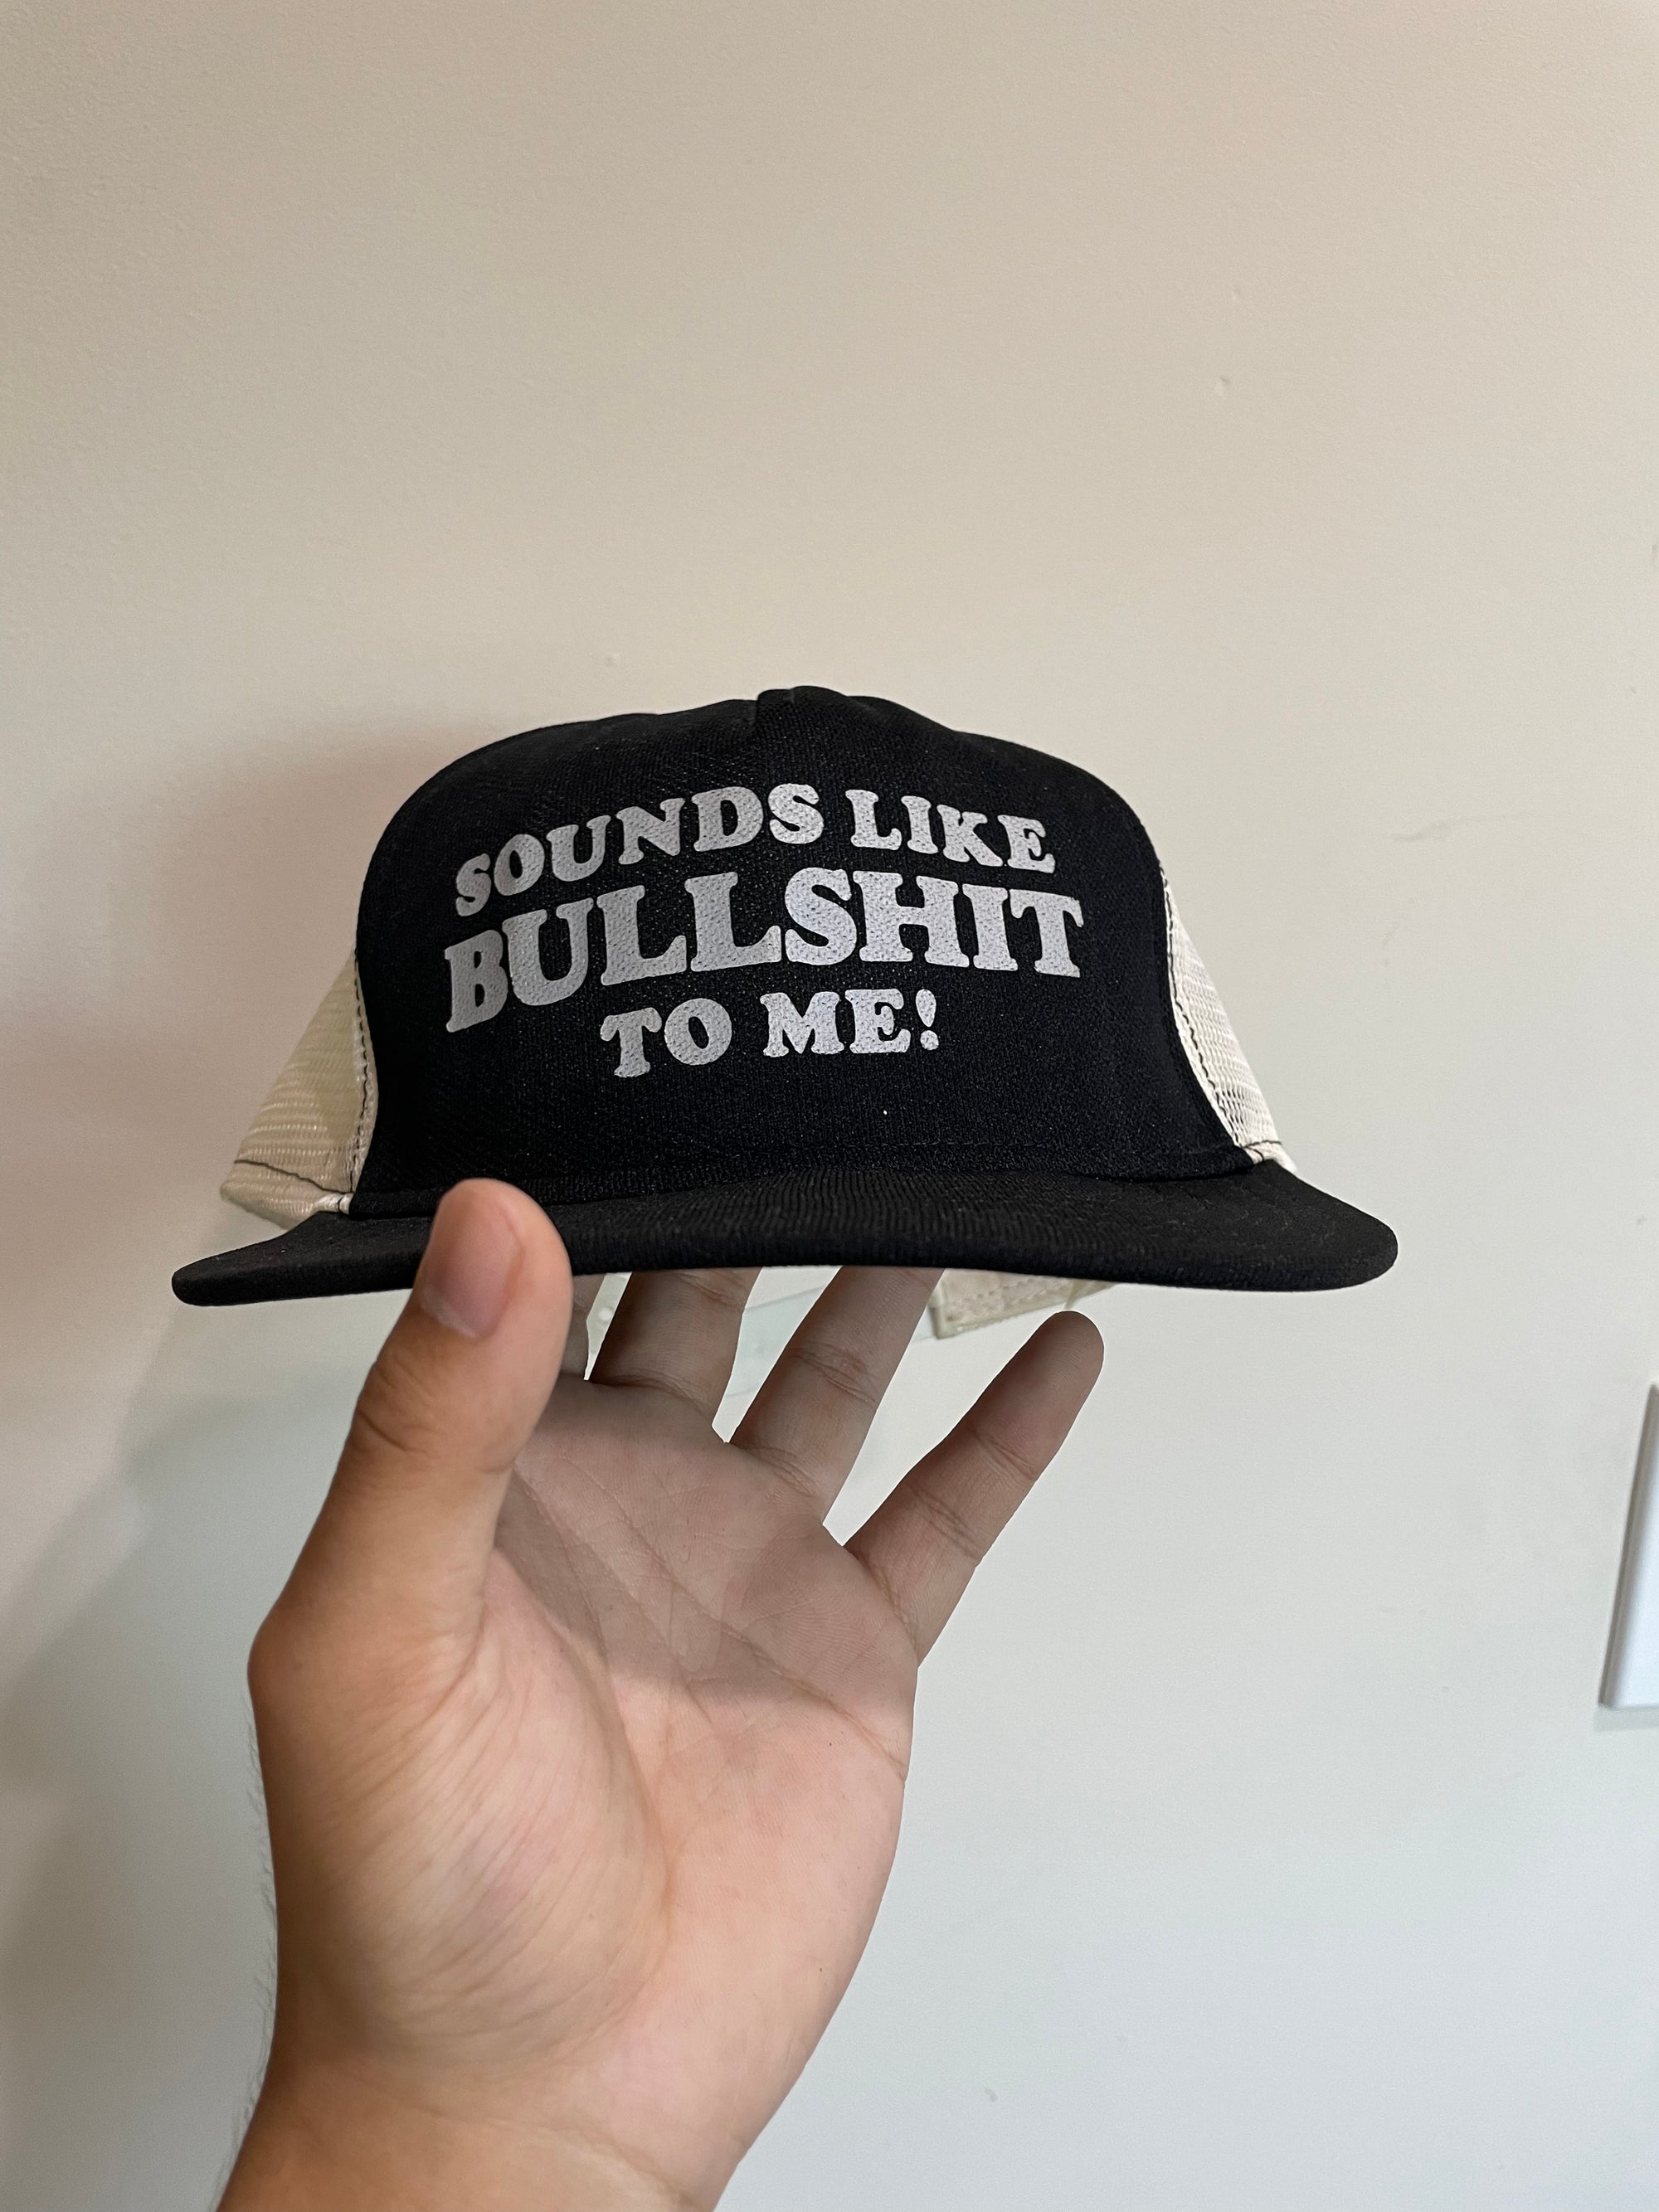 1990s “Sounds Like Bullshit To Me!” Trucker Hat